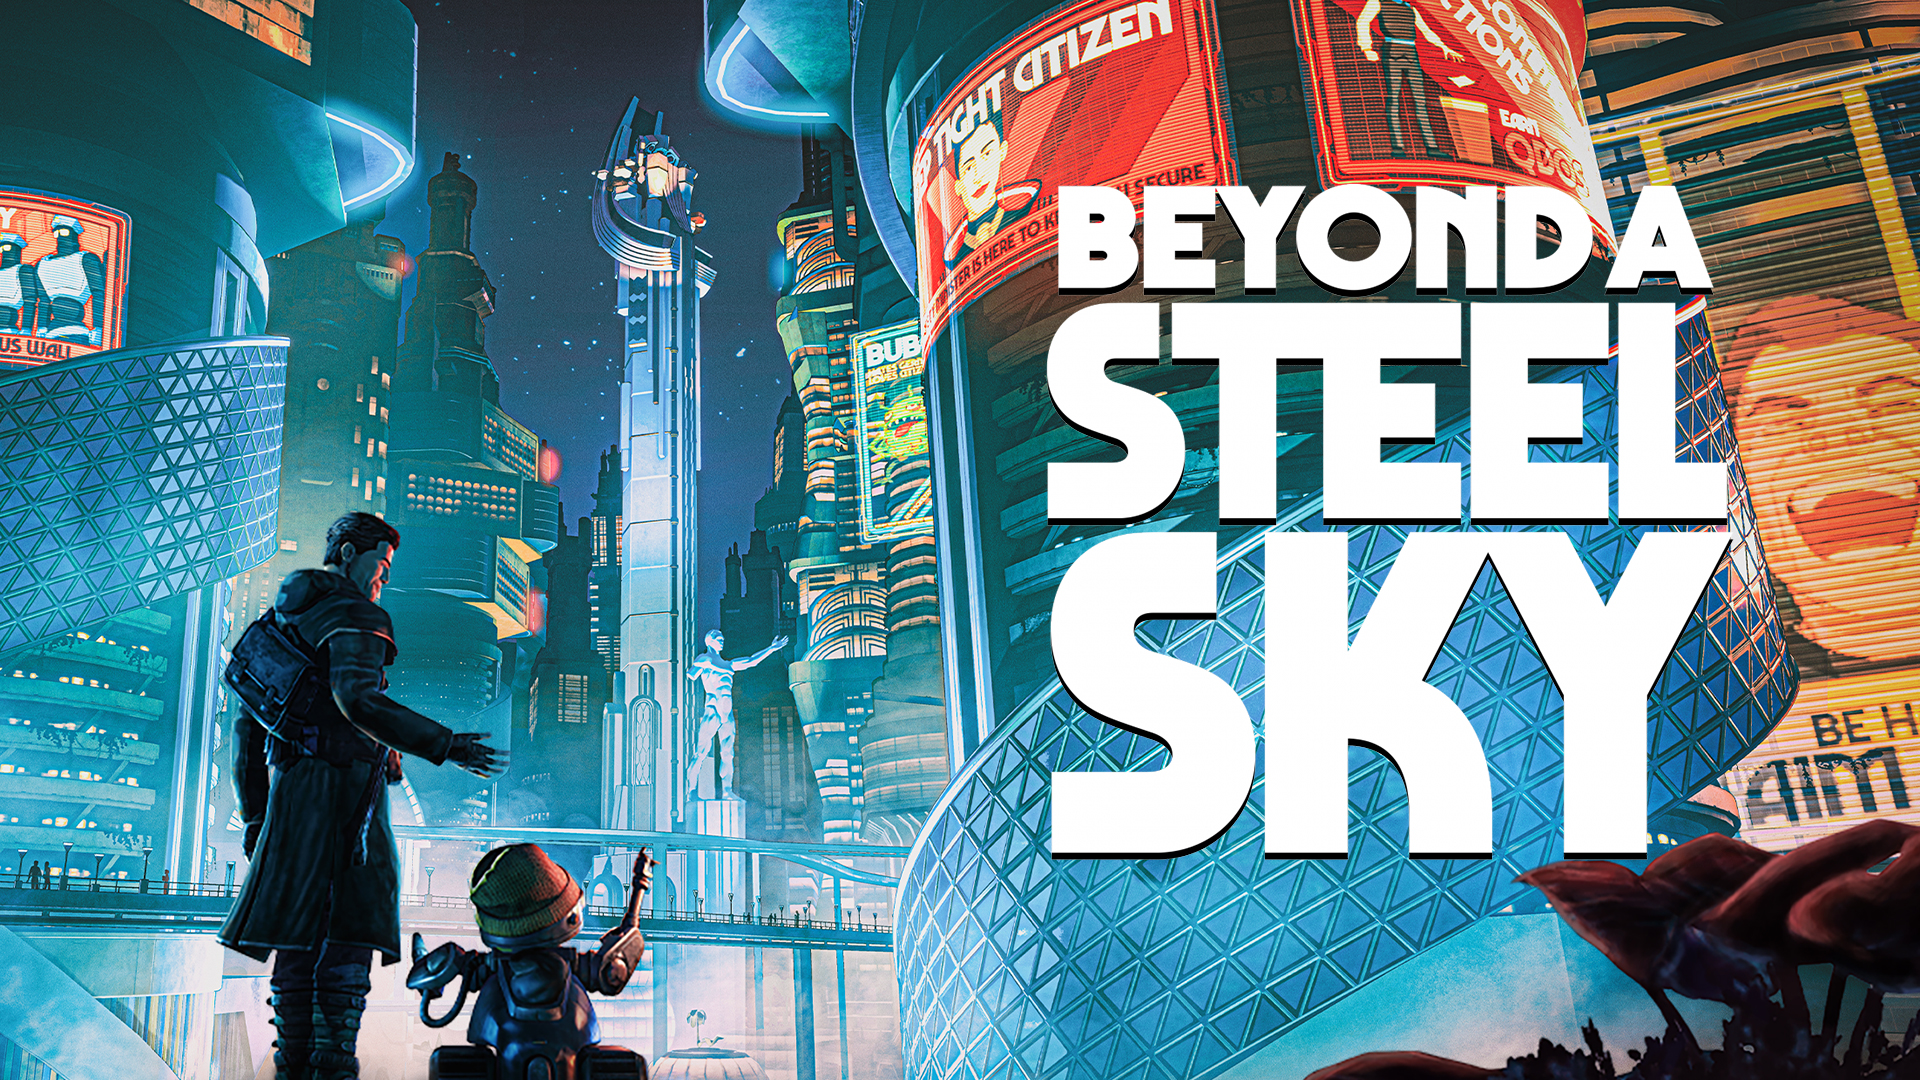 download beyond a steel sky metacritic